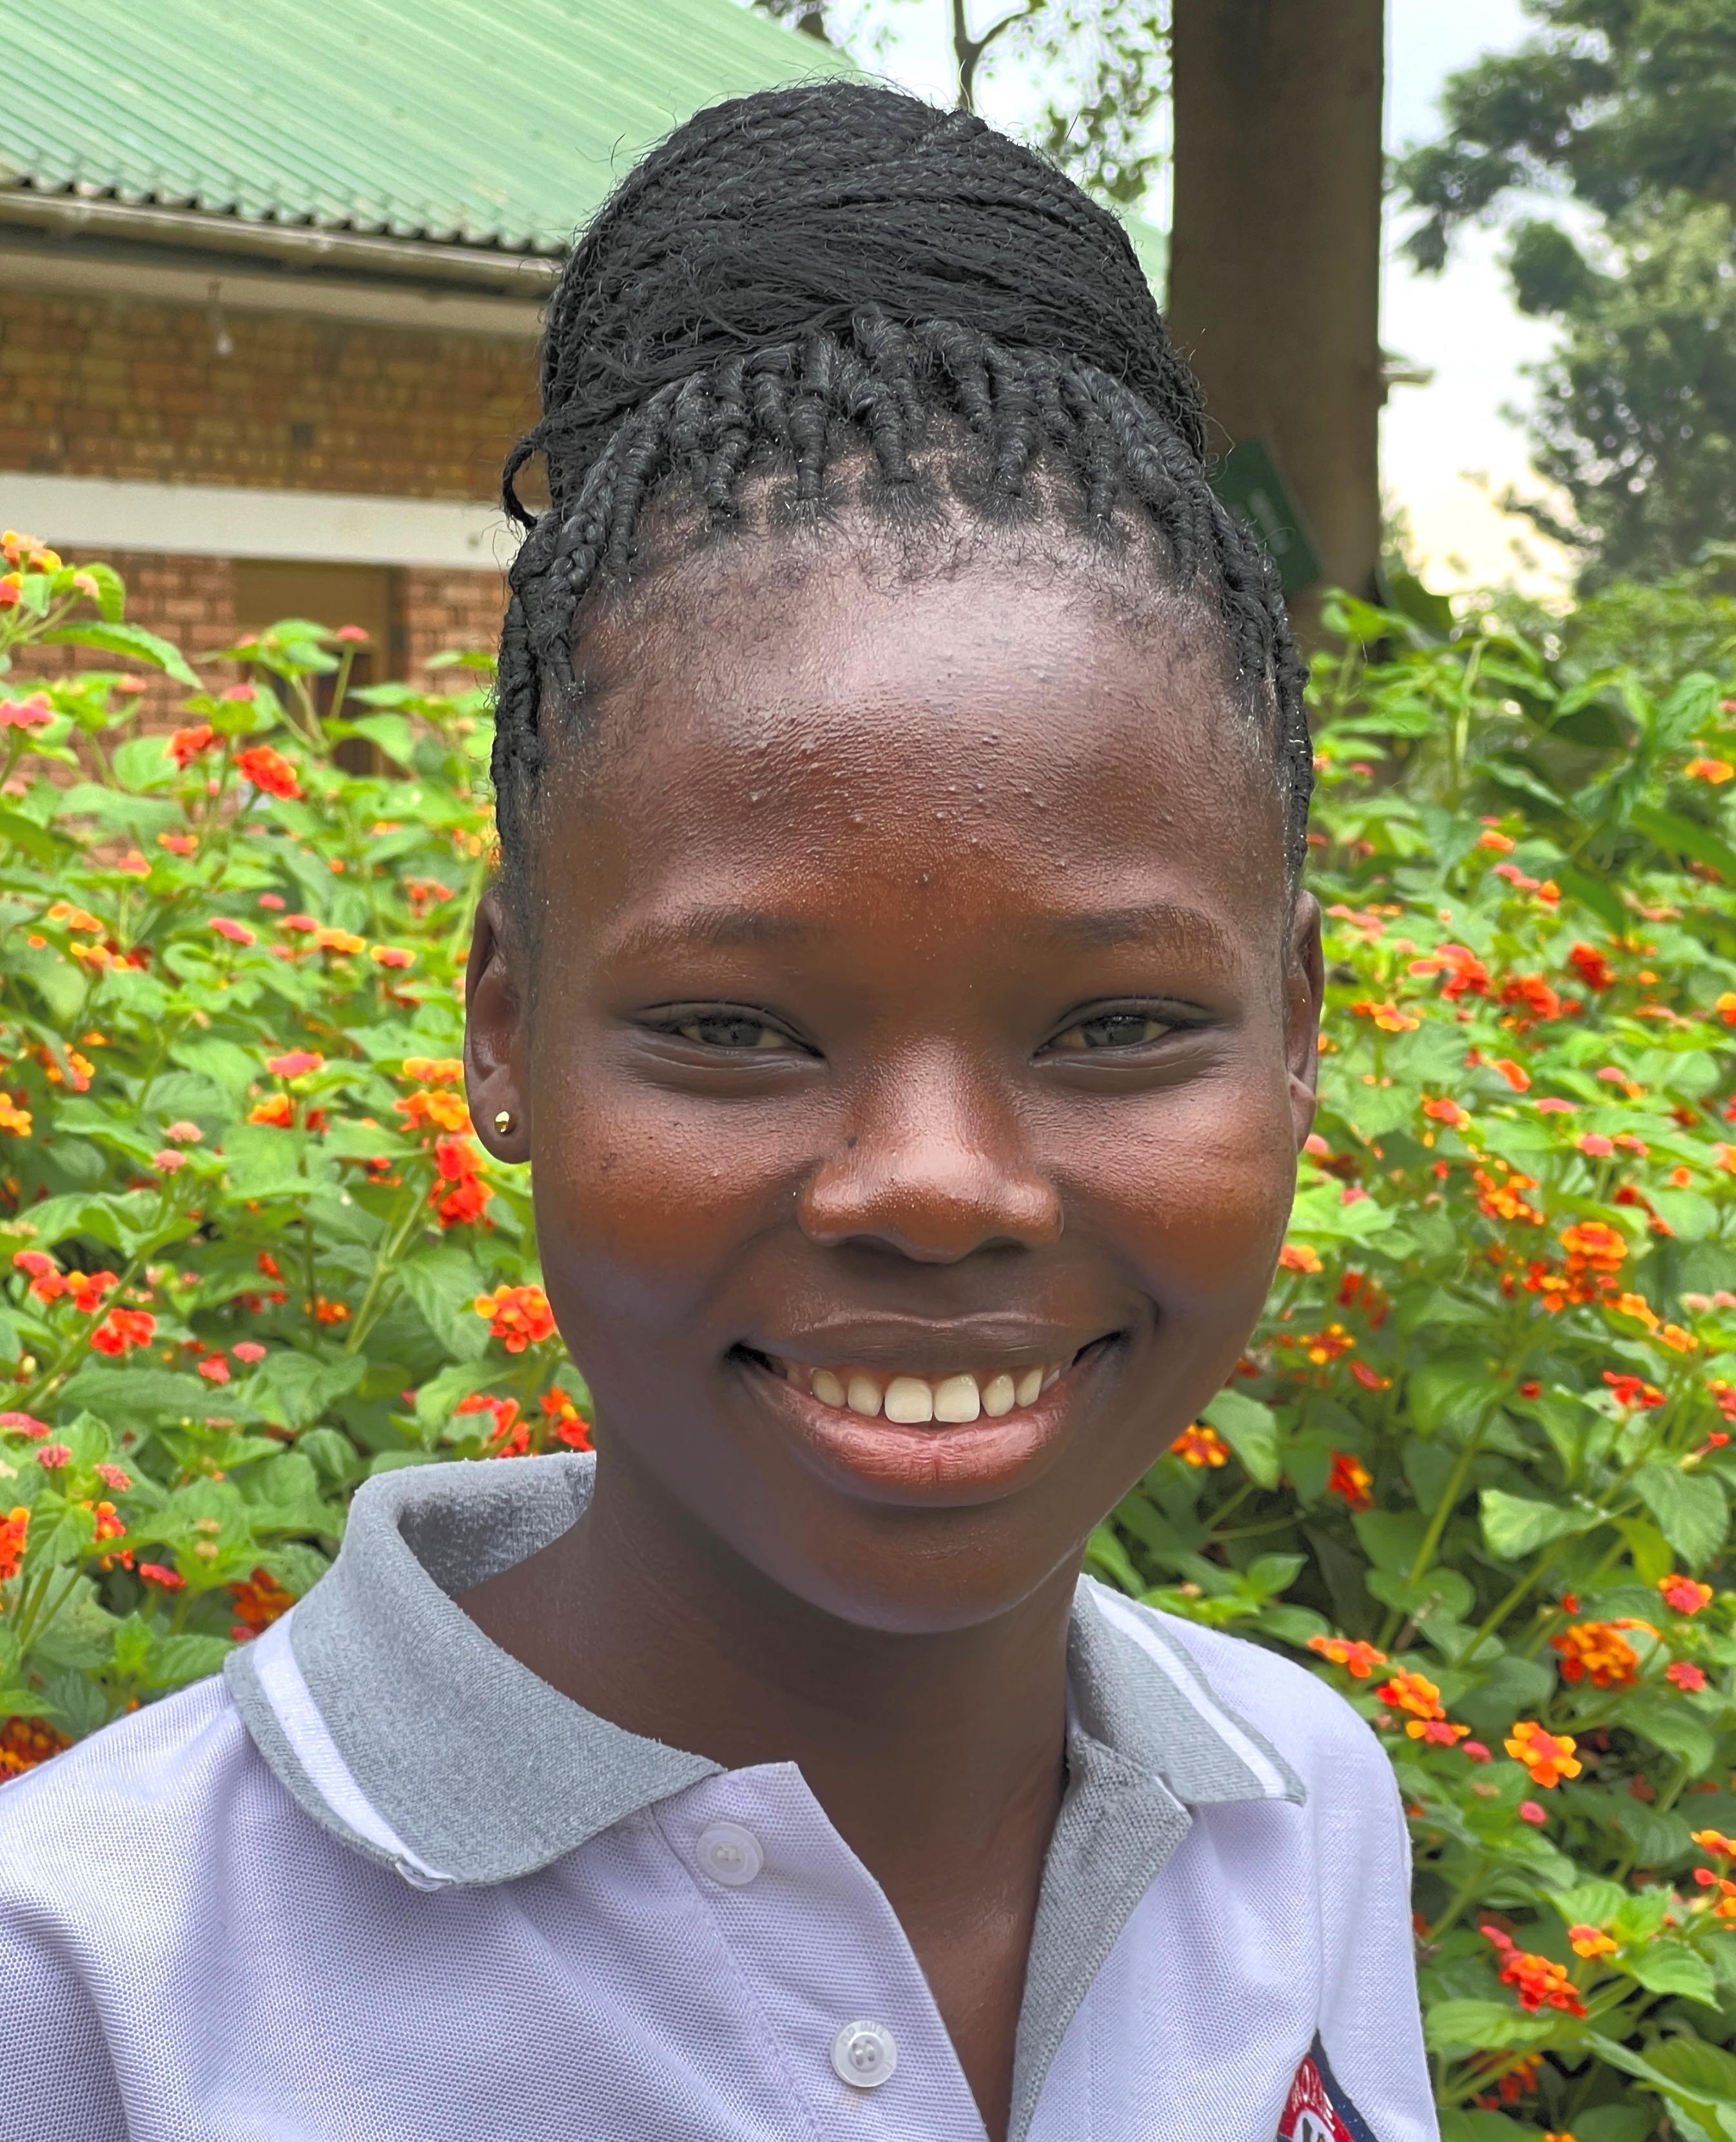 Smiling, well-groomed, young Ugandan woman